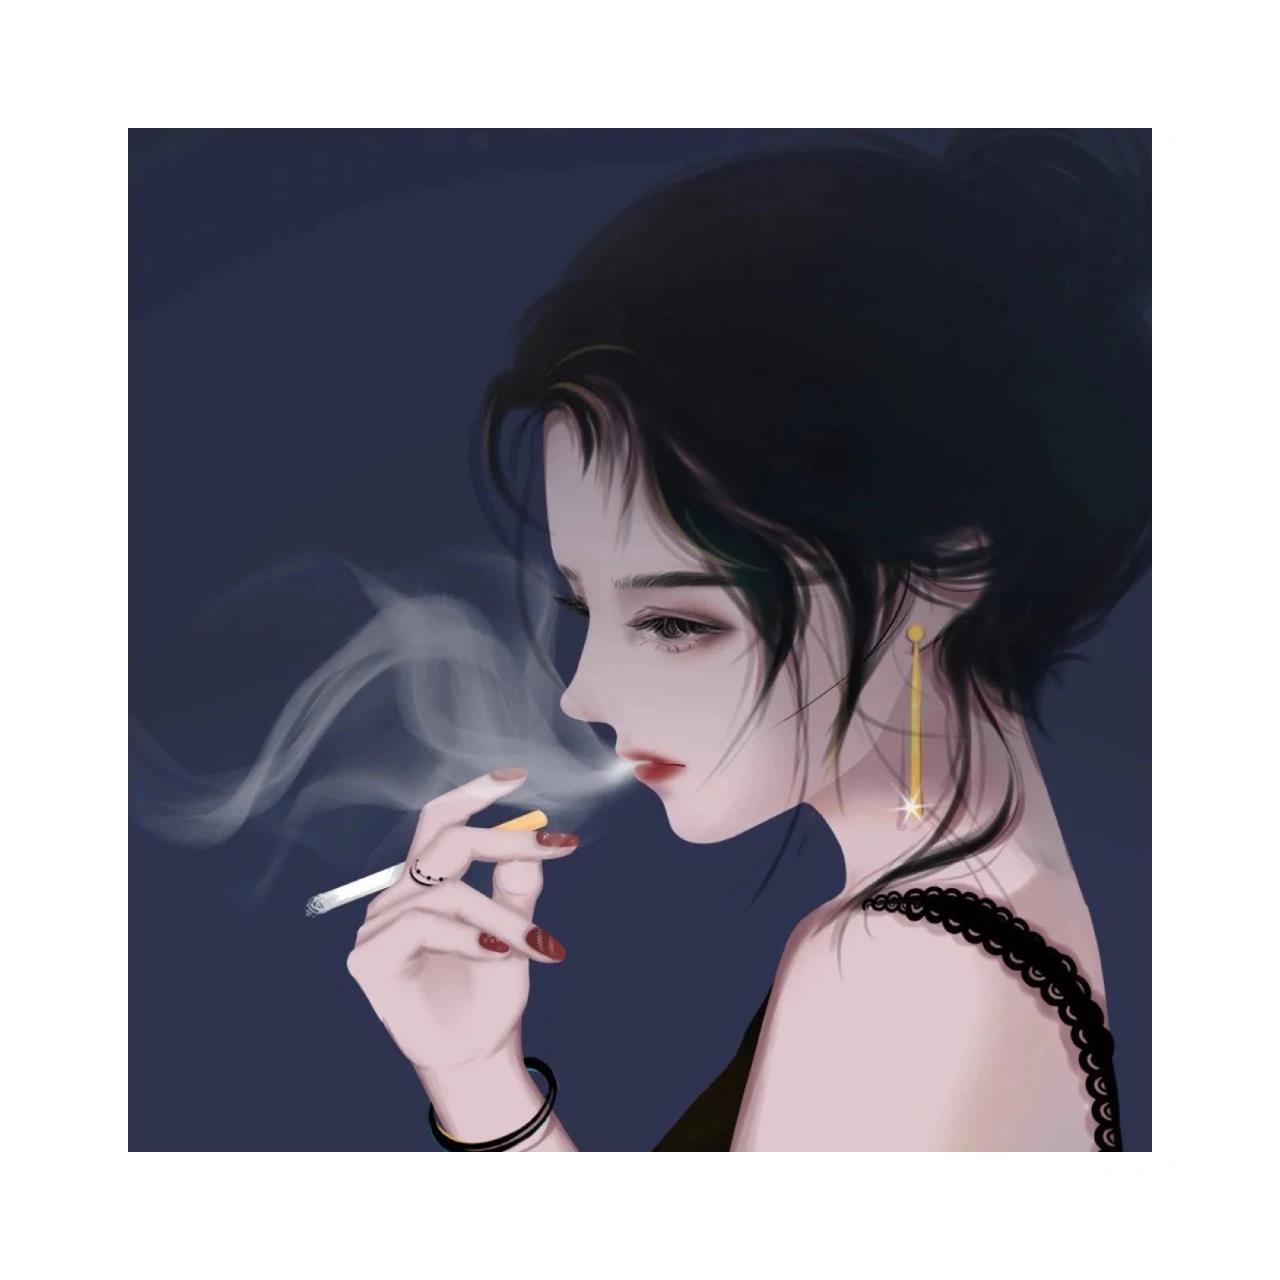 抽烟动漫女头像 抽烟动漫女头像